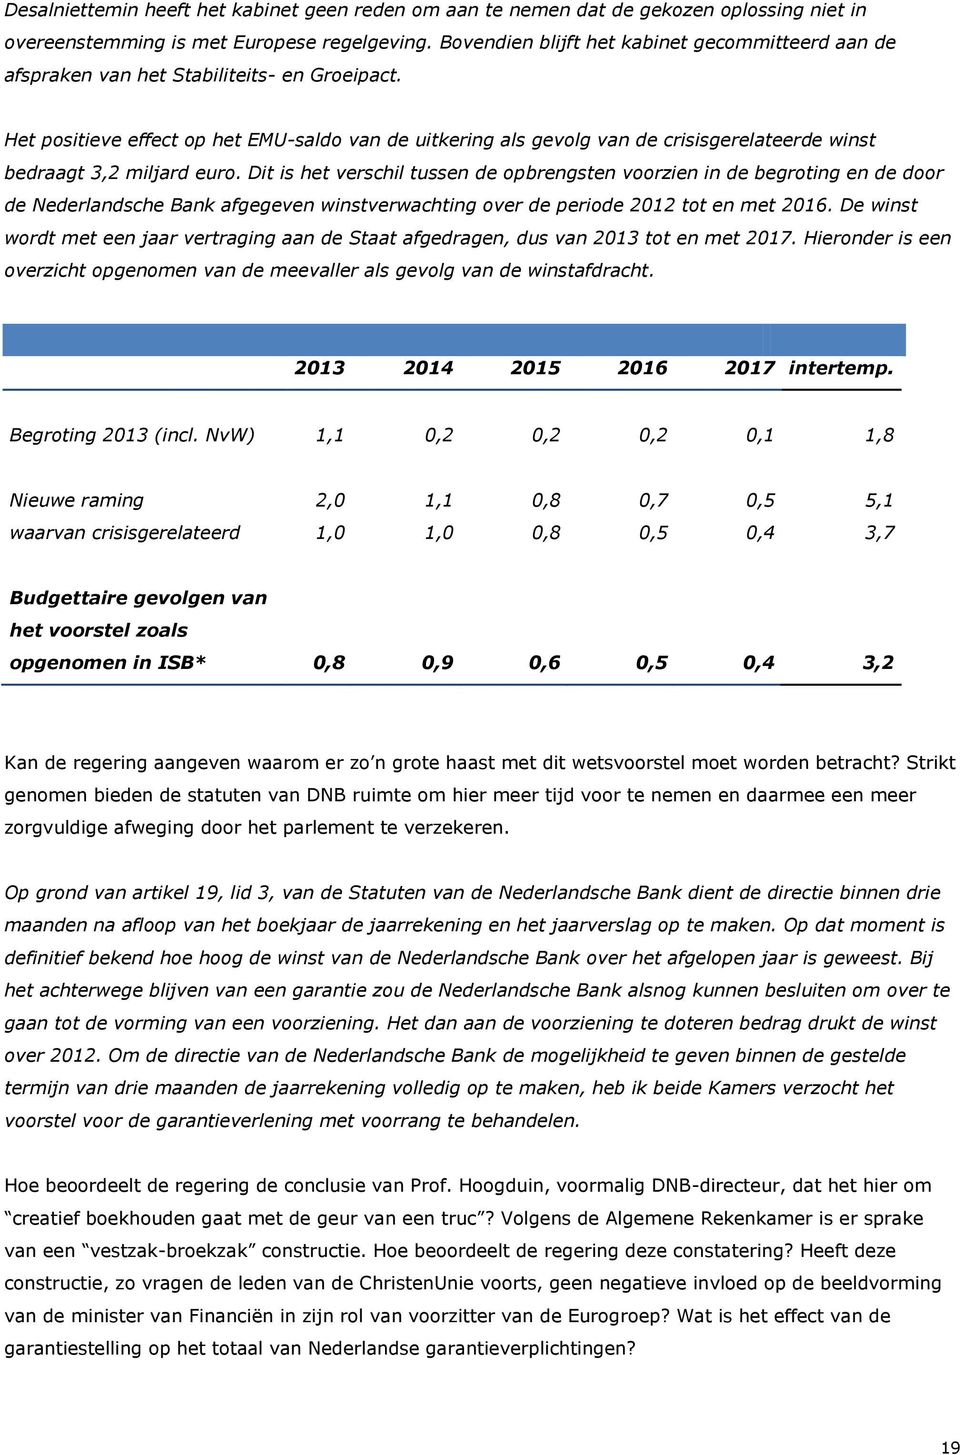 Het positieve effect op het EMU-saldo van de uitkering als gevolg van de crisisgerelateerde winst bedraagt 3,2 miljard euro.